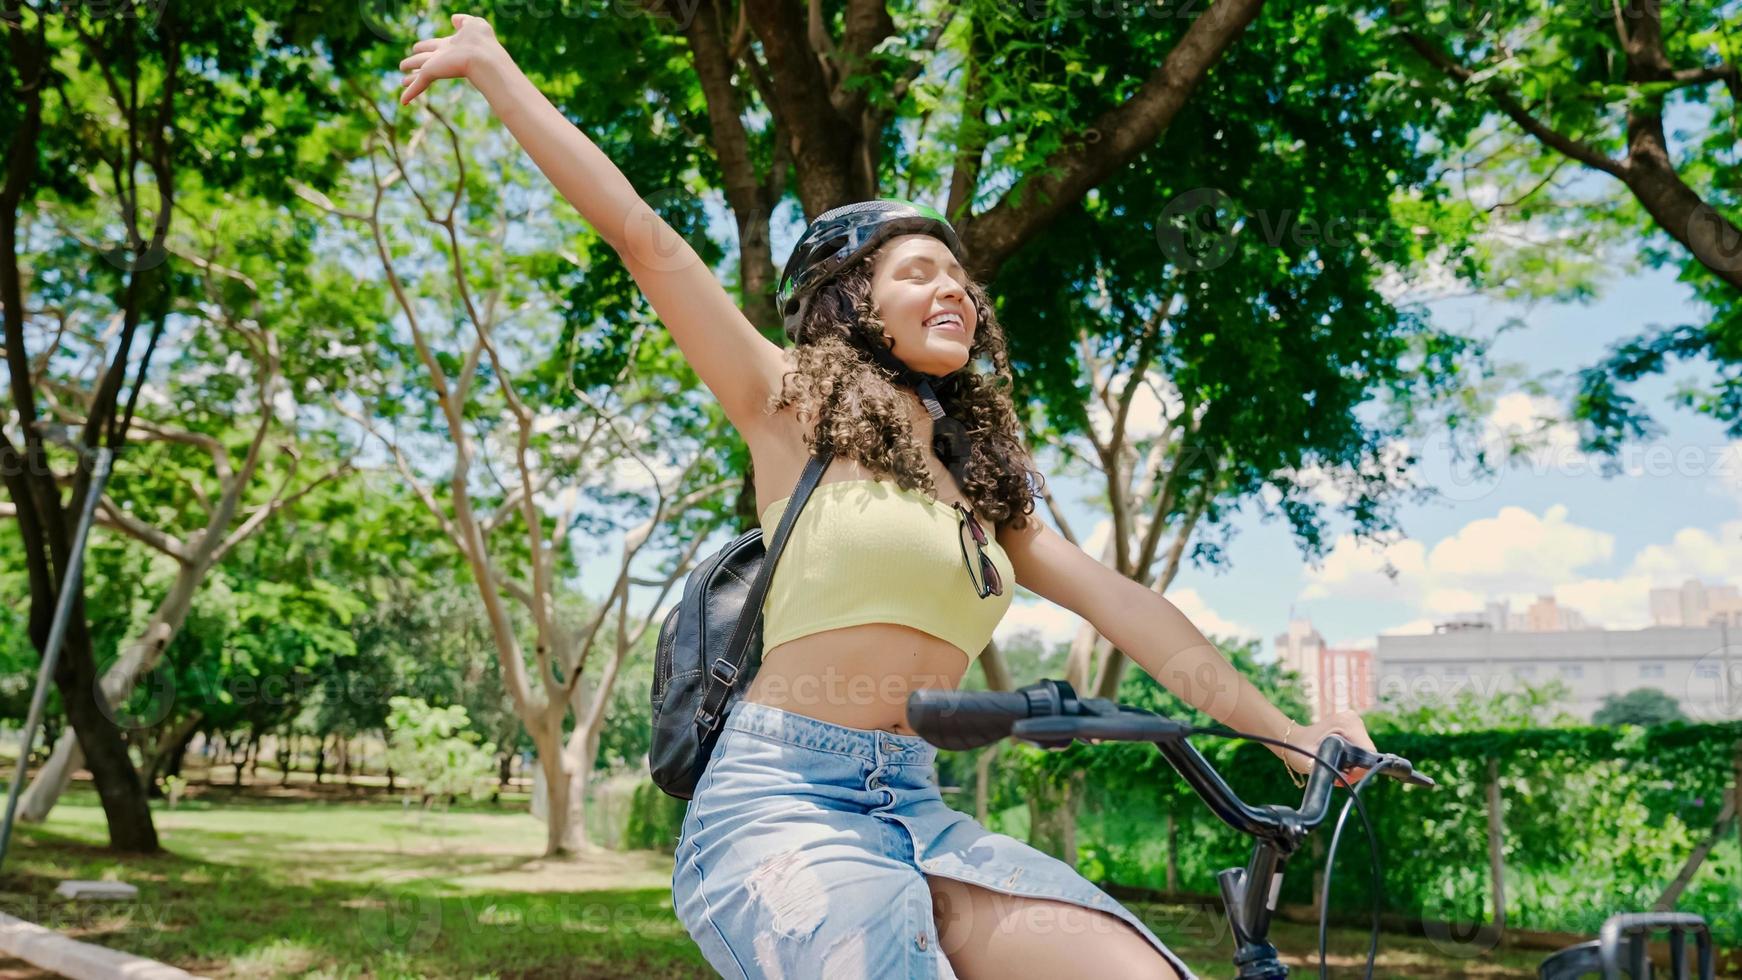 la giovane donna latina con il casco protettivo sta andando in bicicletta lungo la pista ciclabile in un parco cittadino foto